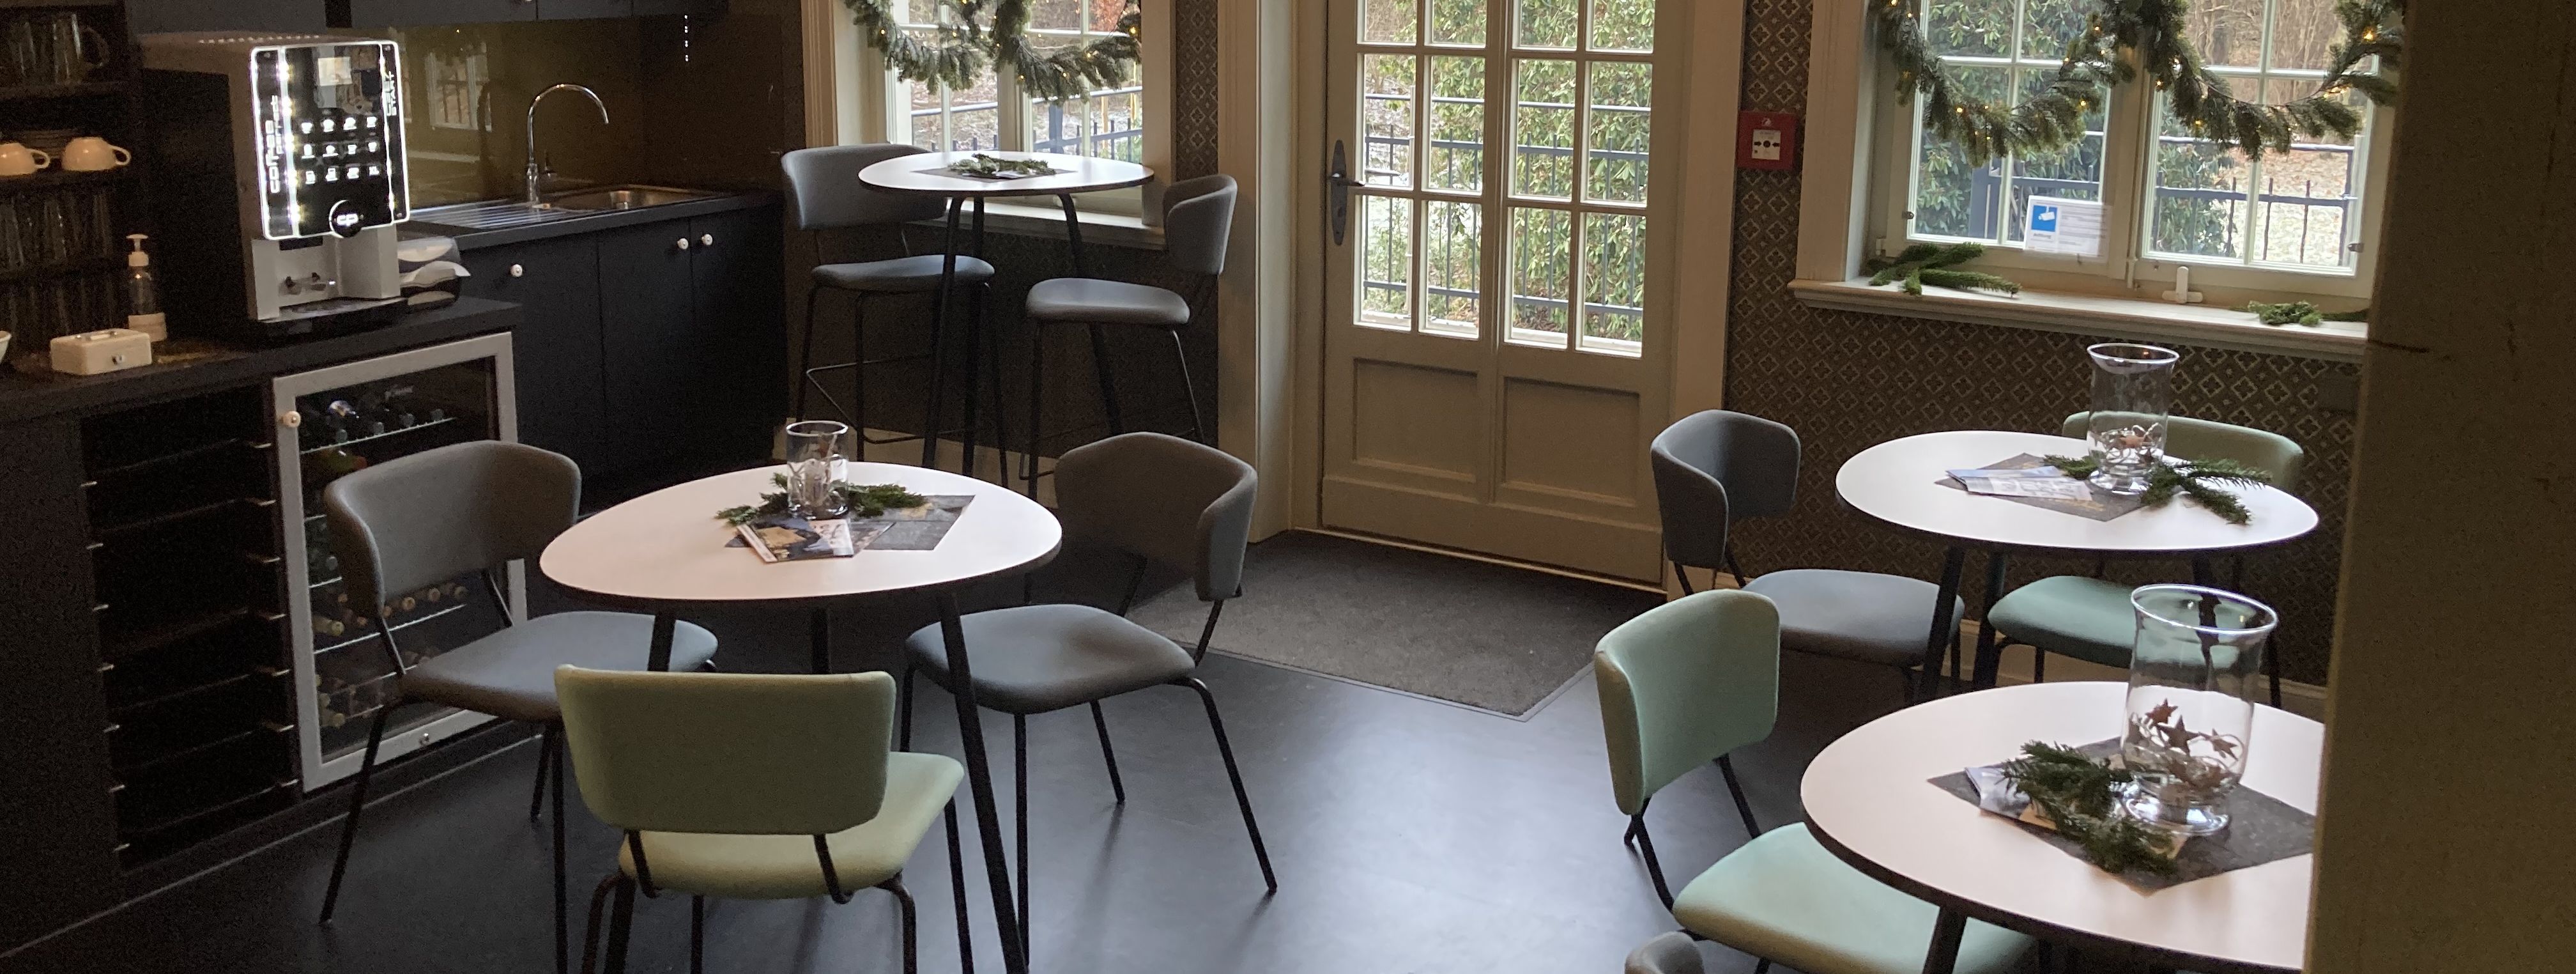 Blick in das winterlich geschmückte Museumscafé mit 3 kleinen Cafétischen, Kaffeebar und Parkzugang.. Der Raum hat gold-bläuliche Tapeten und einen schwarzen Linoleum-Boden. 